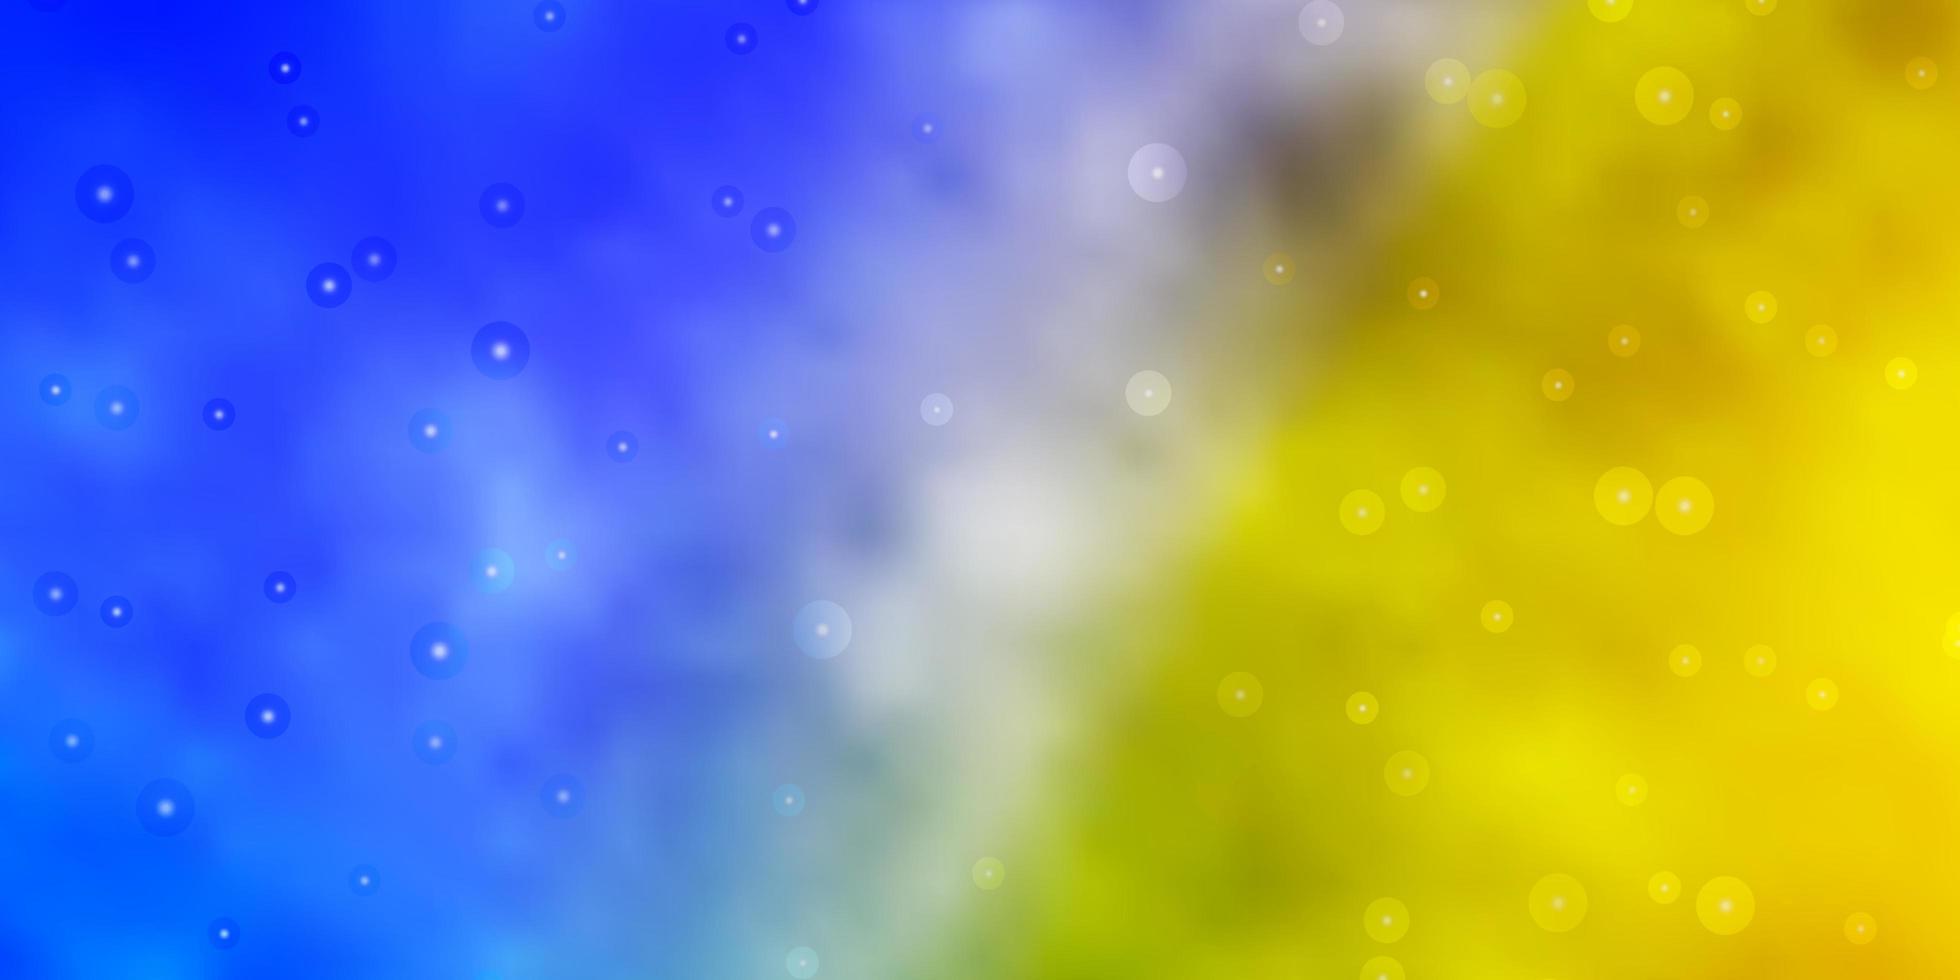 modèle vectoriel jaune bleu clair avec illustration colorée d'étoiles au néon dans un style abstrait avec motif d'étoiles dégradées pour emballer des cadeaux